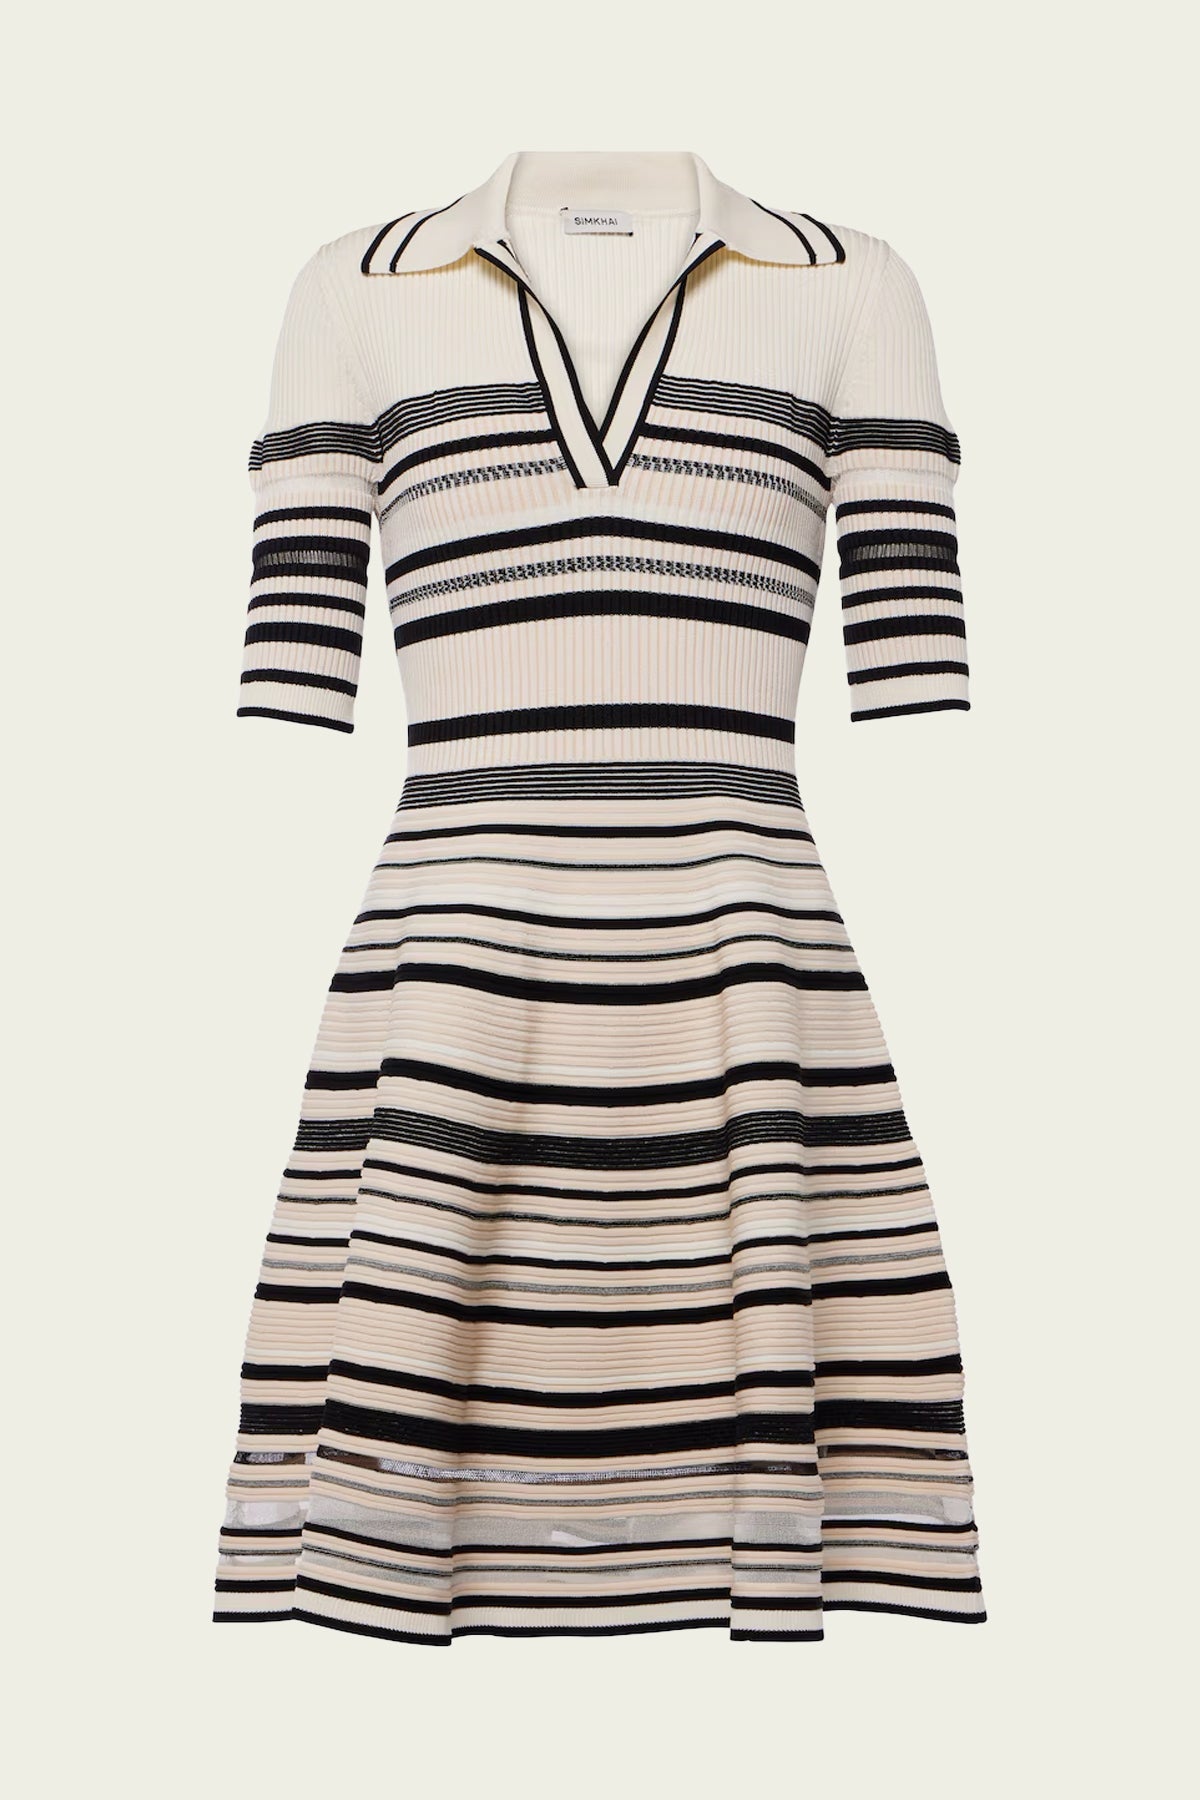 Dessie Mini Dress in Black Stripe - shop - olivia.com